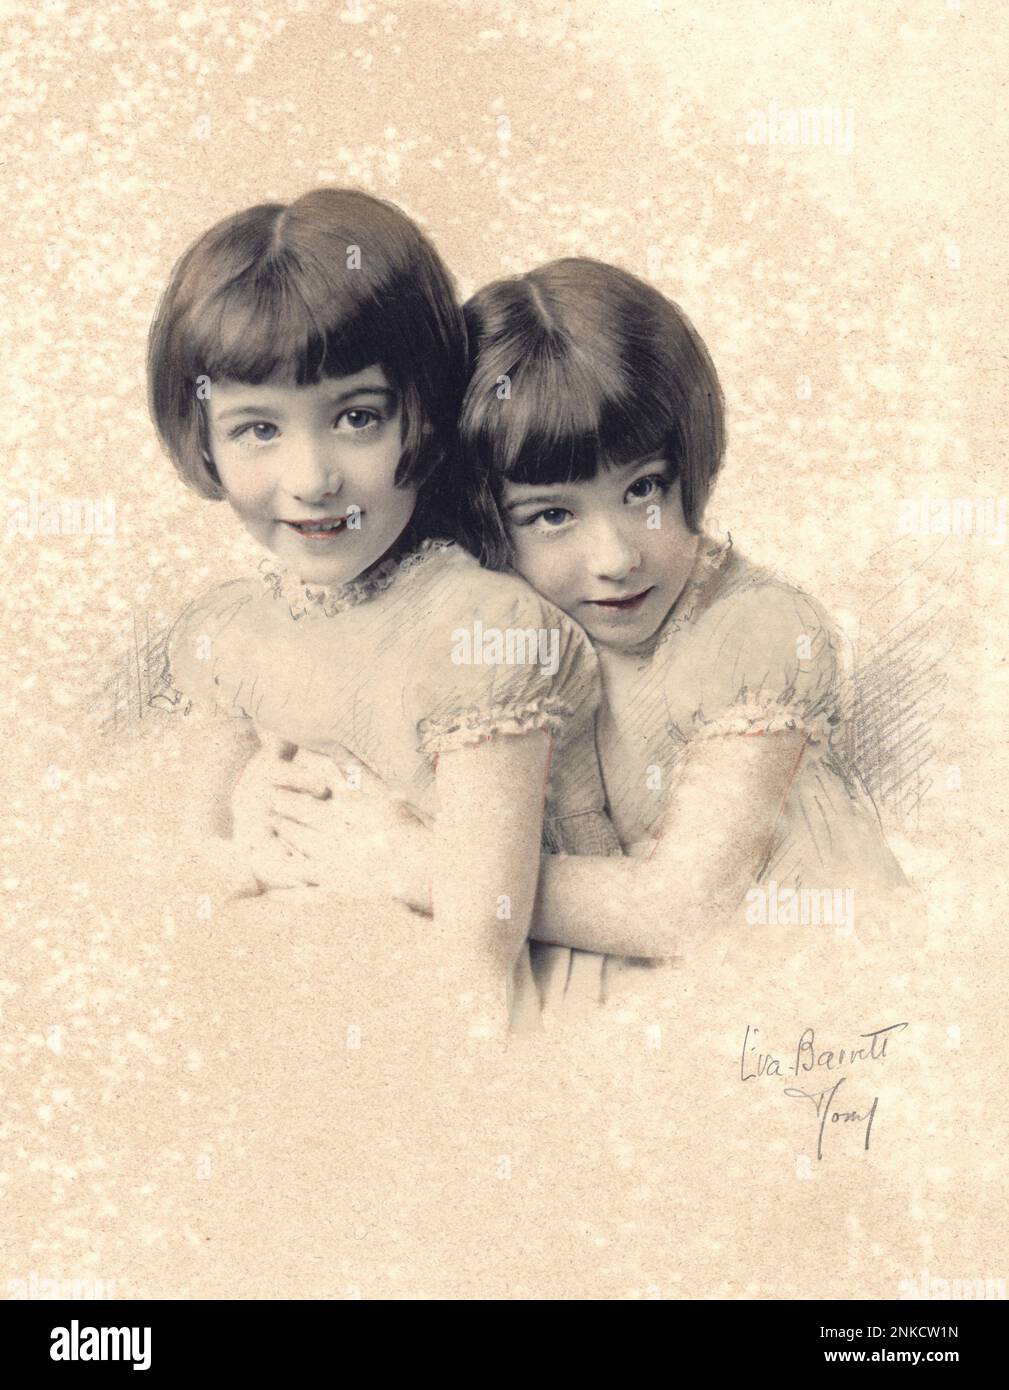 1931 , Roma , ITALIEN : zwei unidentifizierte Zwillingsschwestern aus einer reichen Familie , Porträt des gefeierten Fotografen EVA BARRETT , ROM - SORELLE - FOTO STORICHE - GESCHICHTSFOTOS - STOCK - KIND - BAMBINA - BAMBINE - BAMBINO - BAMBINI - KINDER - BABY - KINDHEIT - RITRATTO - PORTRÄT - GEMELLO - GEMELLI - GEMELLE - KINDHEIT ---- ARCHIVIO GBB Stockfoto